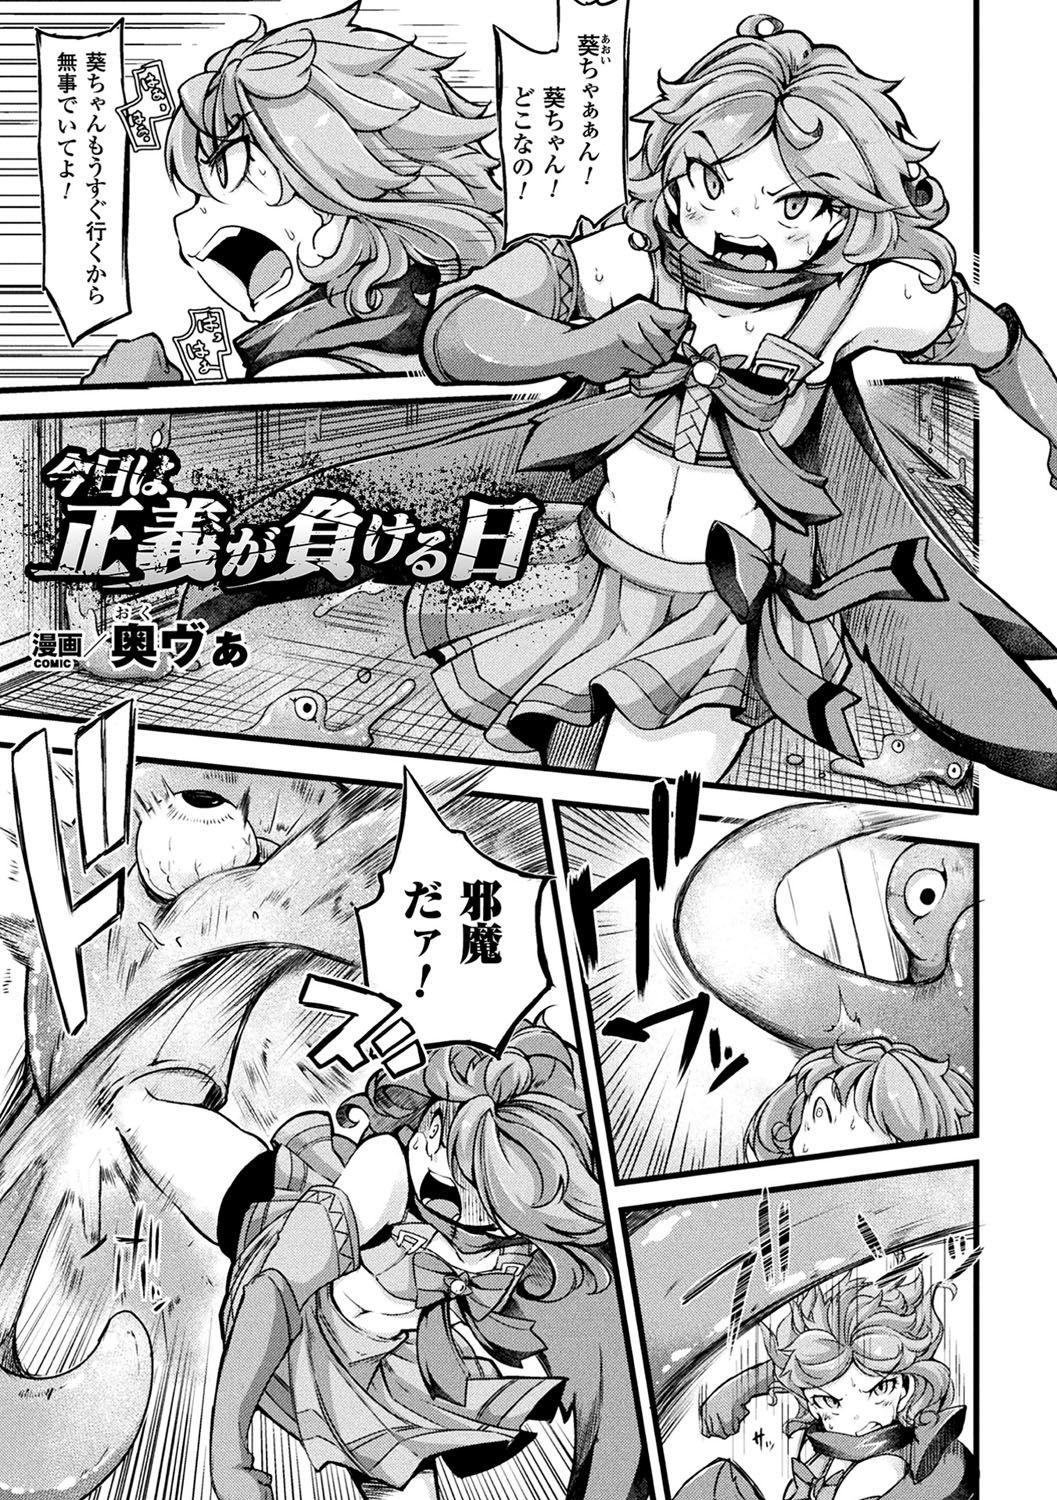 Spooning 2D Comic Magazine Mahou Shoujo Naedokoka Keikaku Vol. 2 Gritona - Page 4